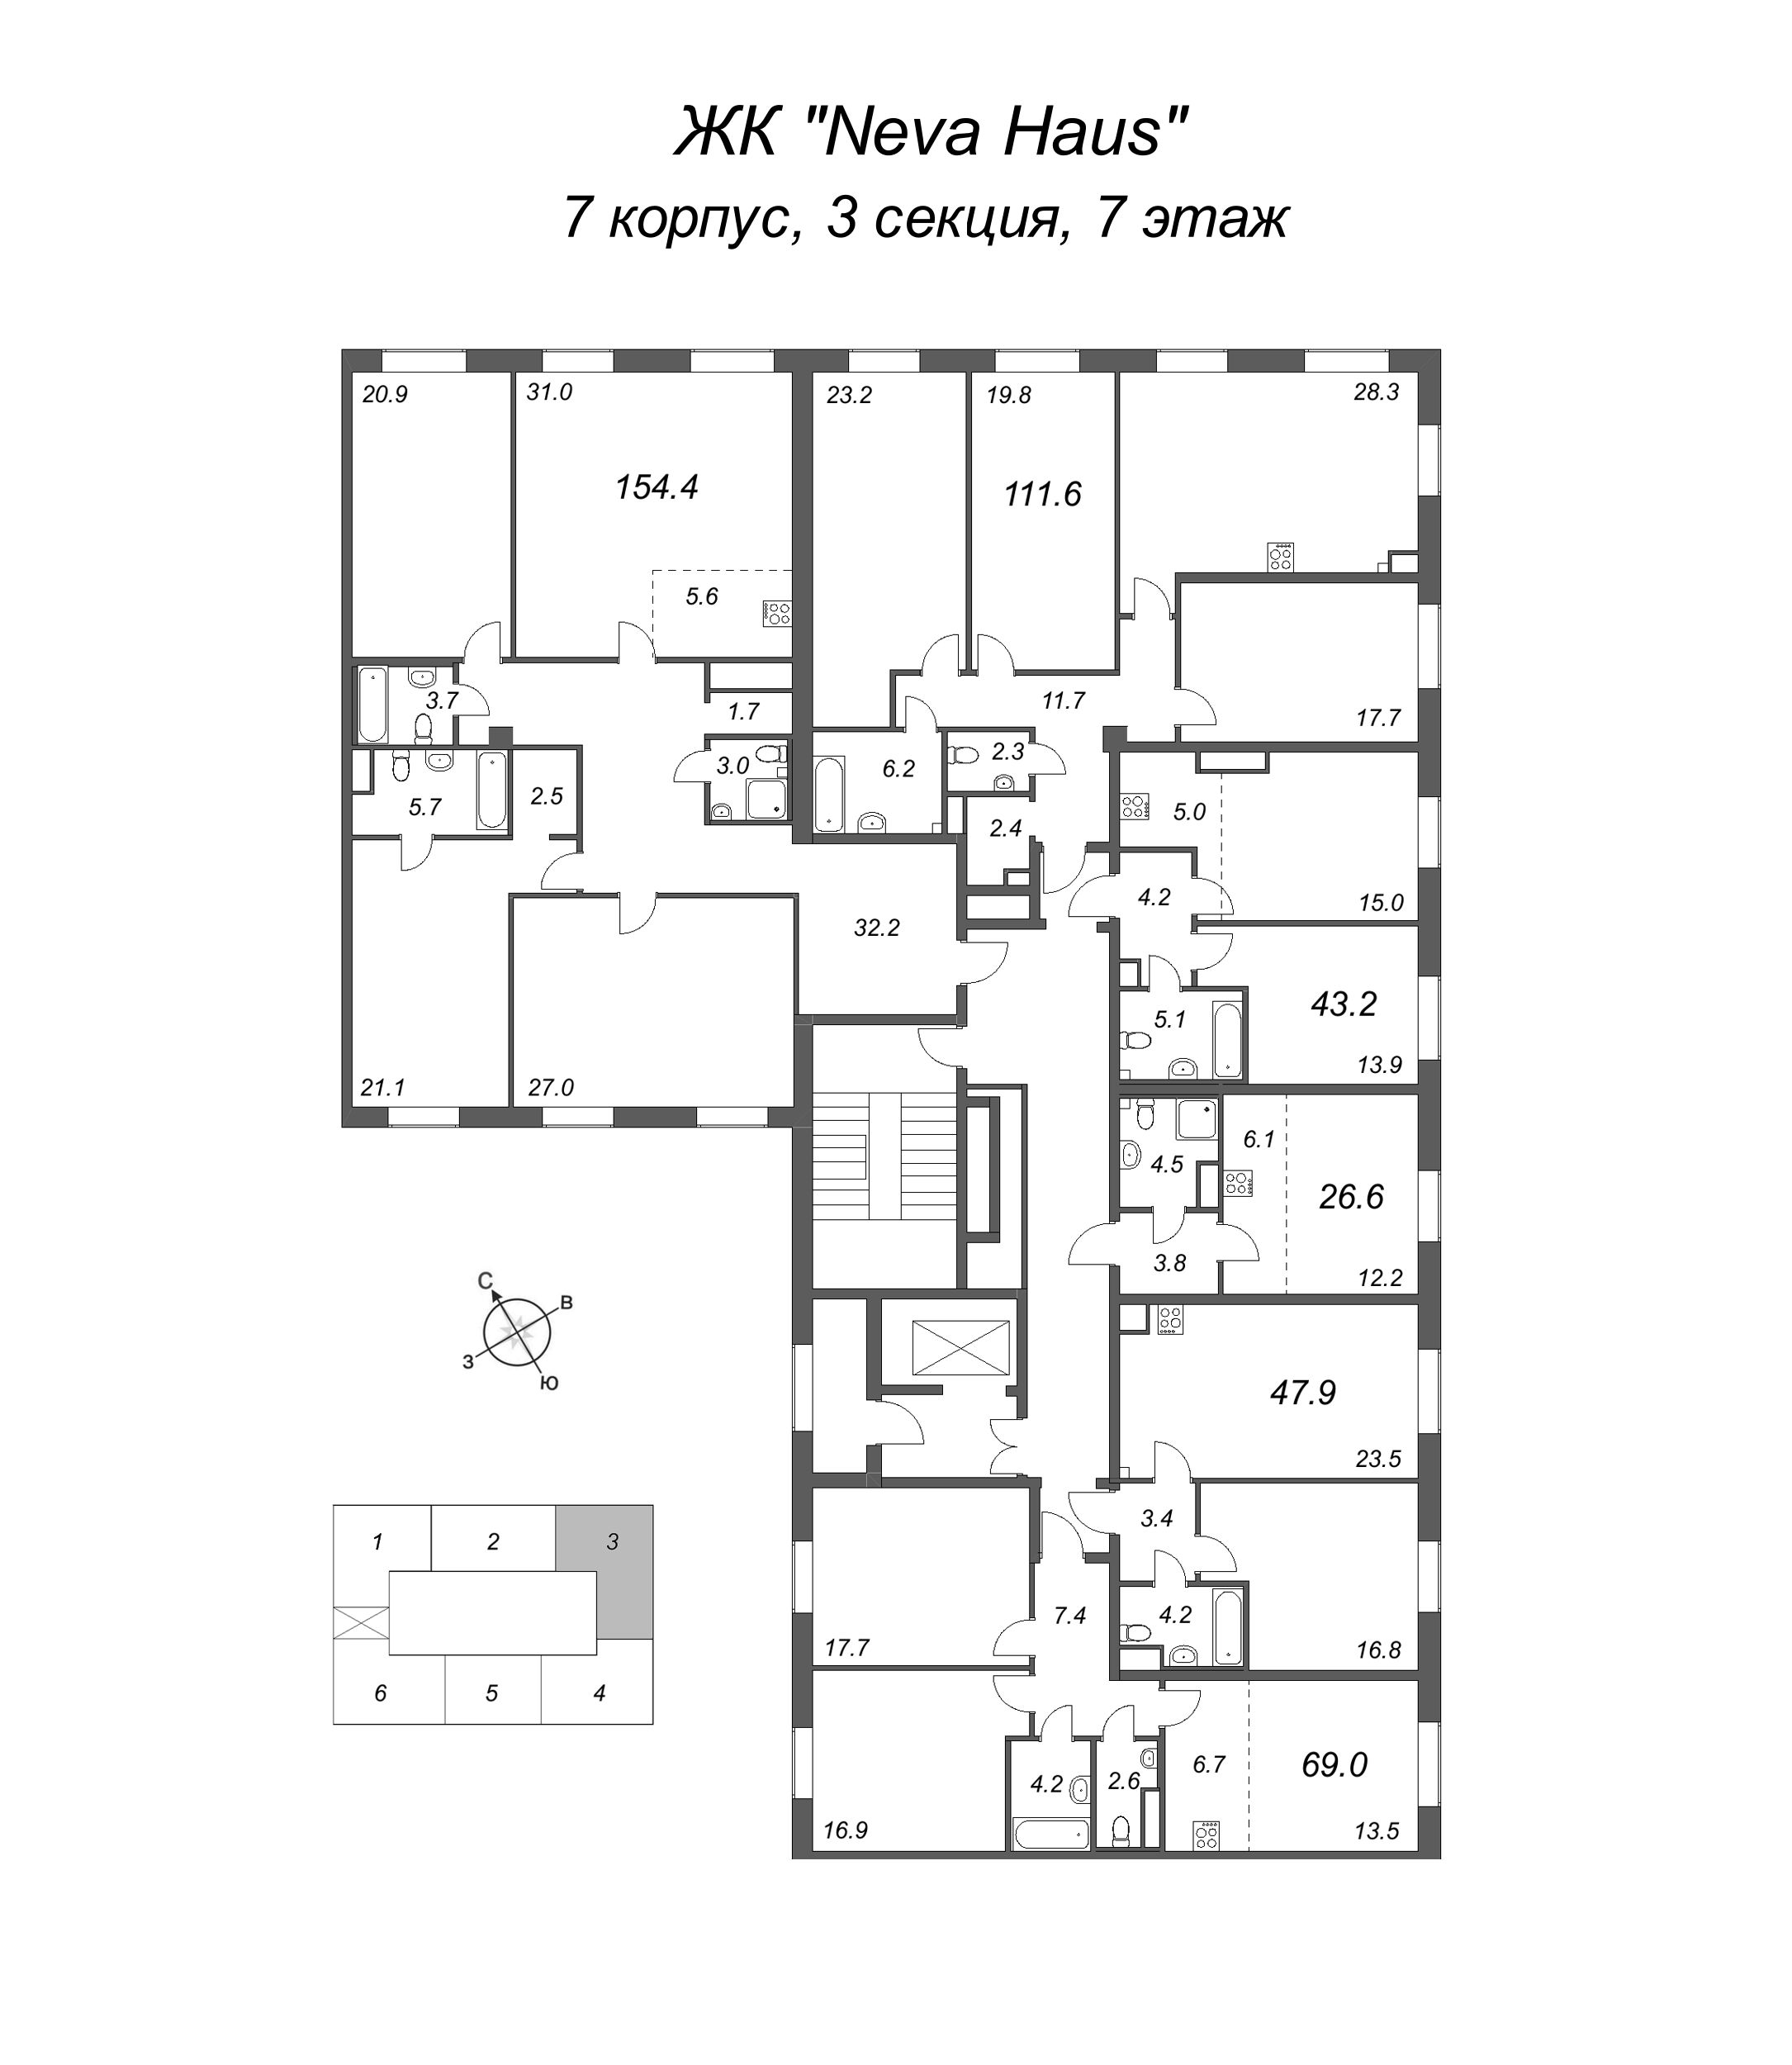 4-комнатная (Евро) квартира, 112.8 м² в ЖК "Neva Haus" - планировка этажа